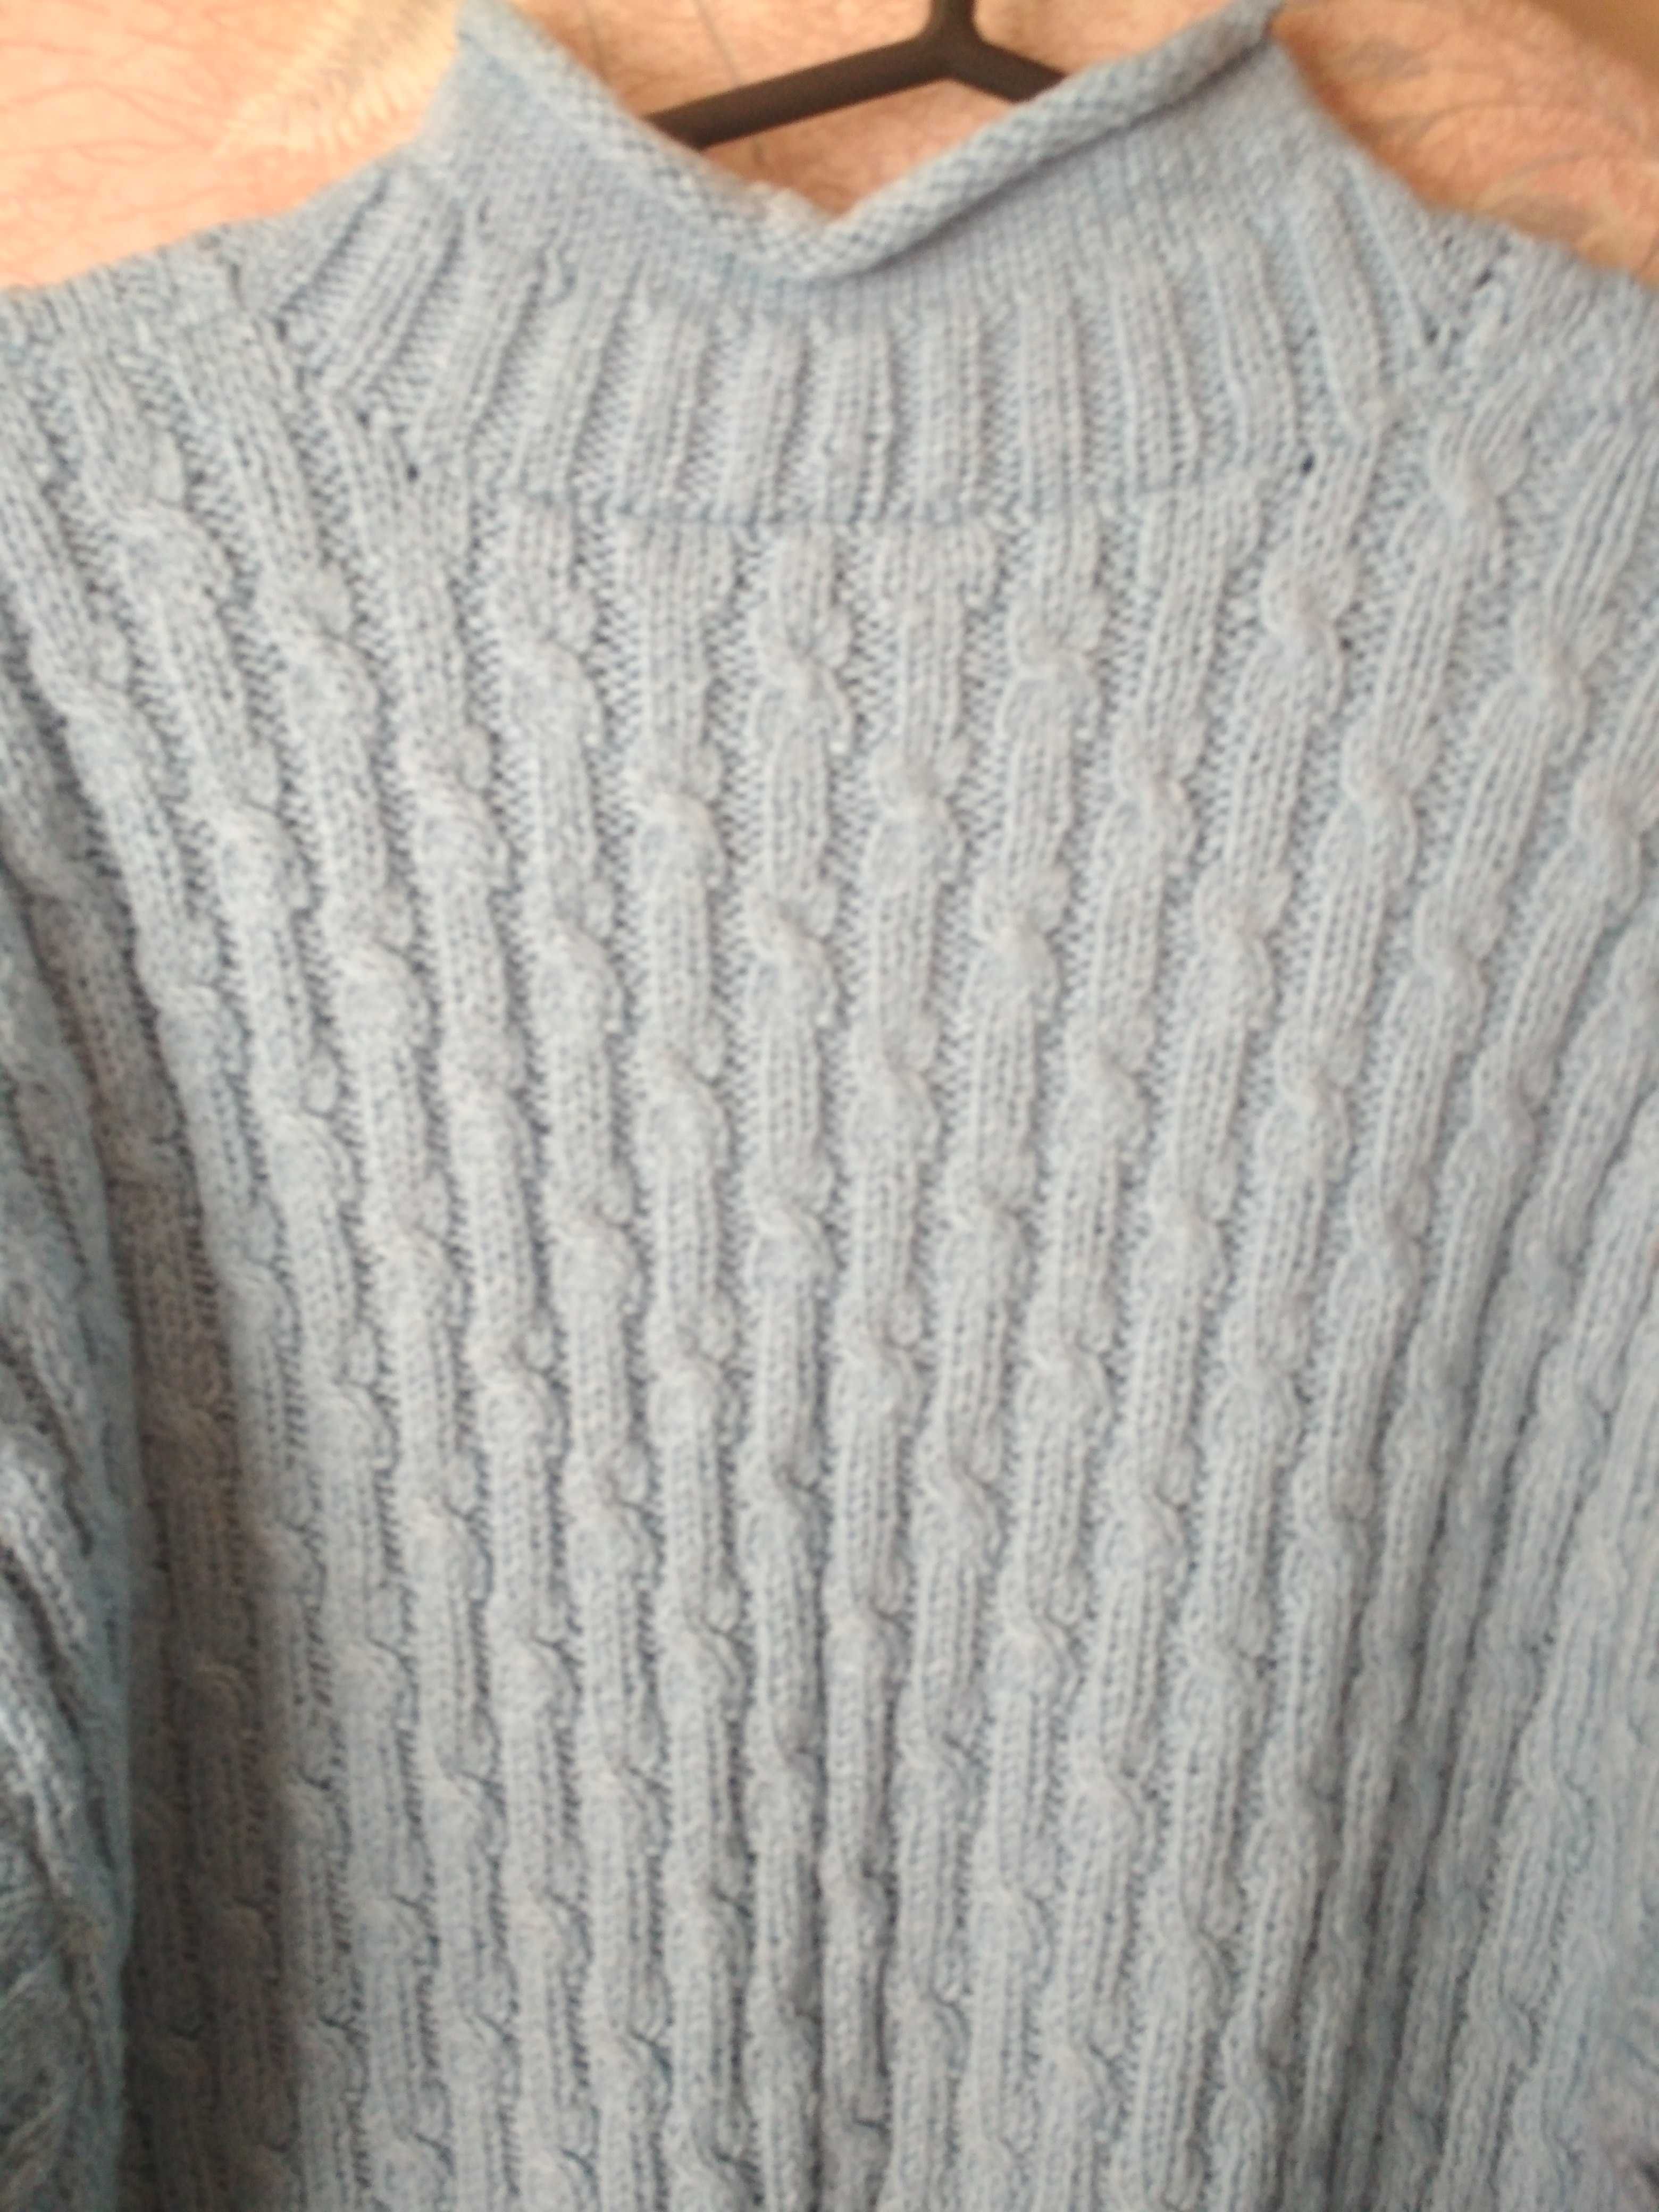 свитер вязаный мужской голубого цвета ручная работа.тёплый